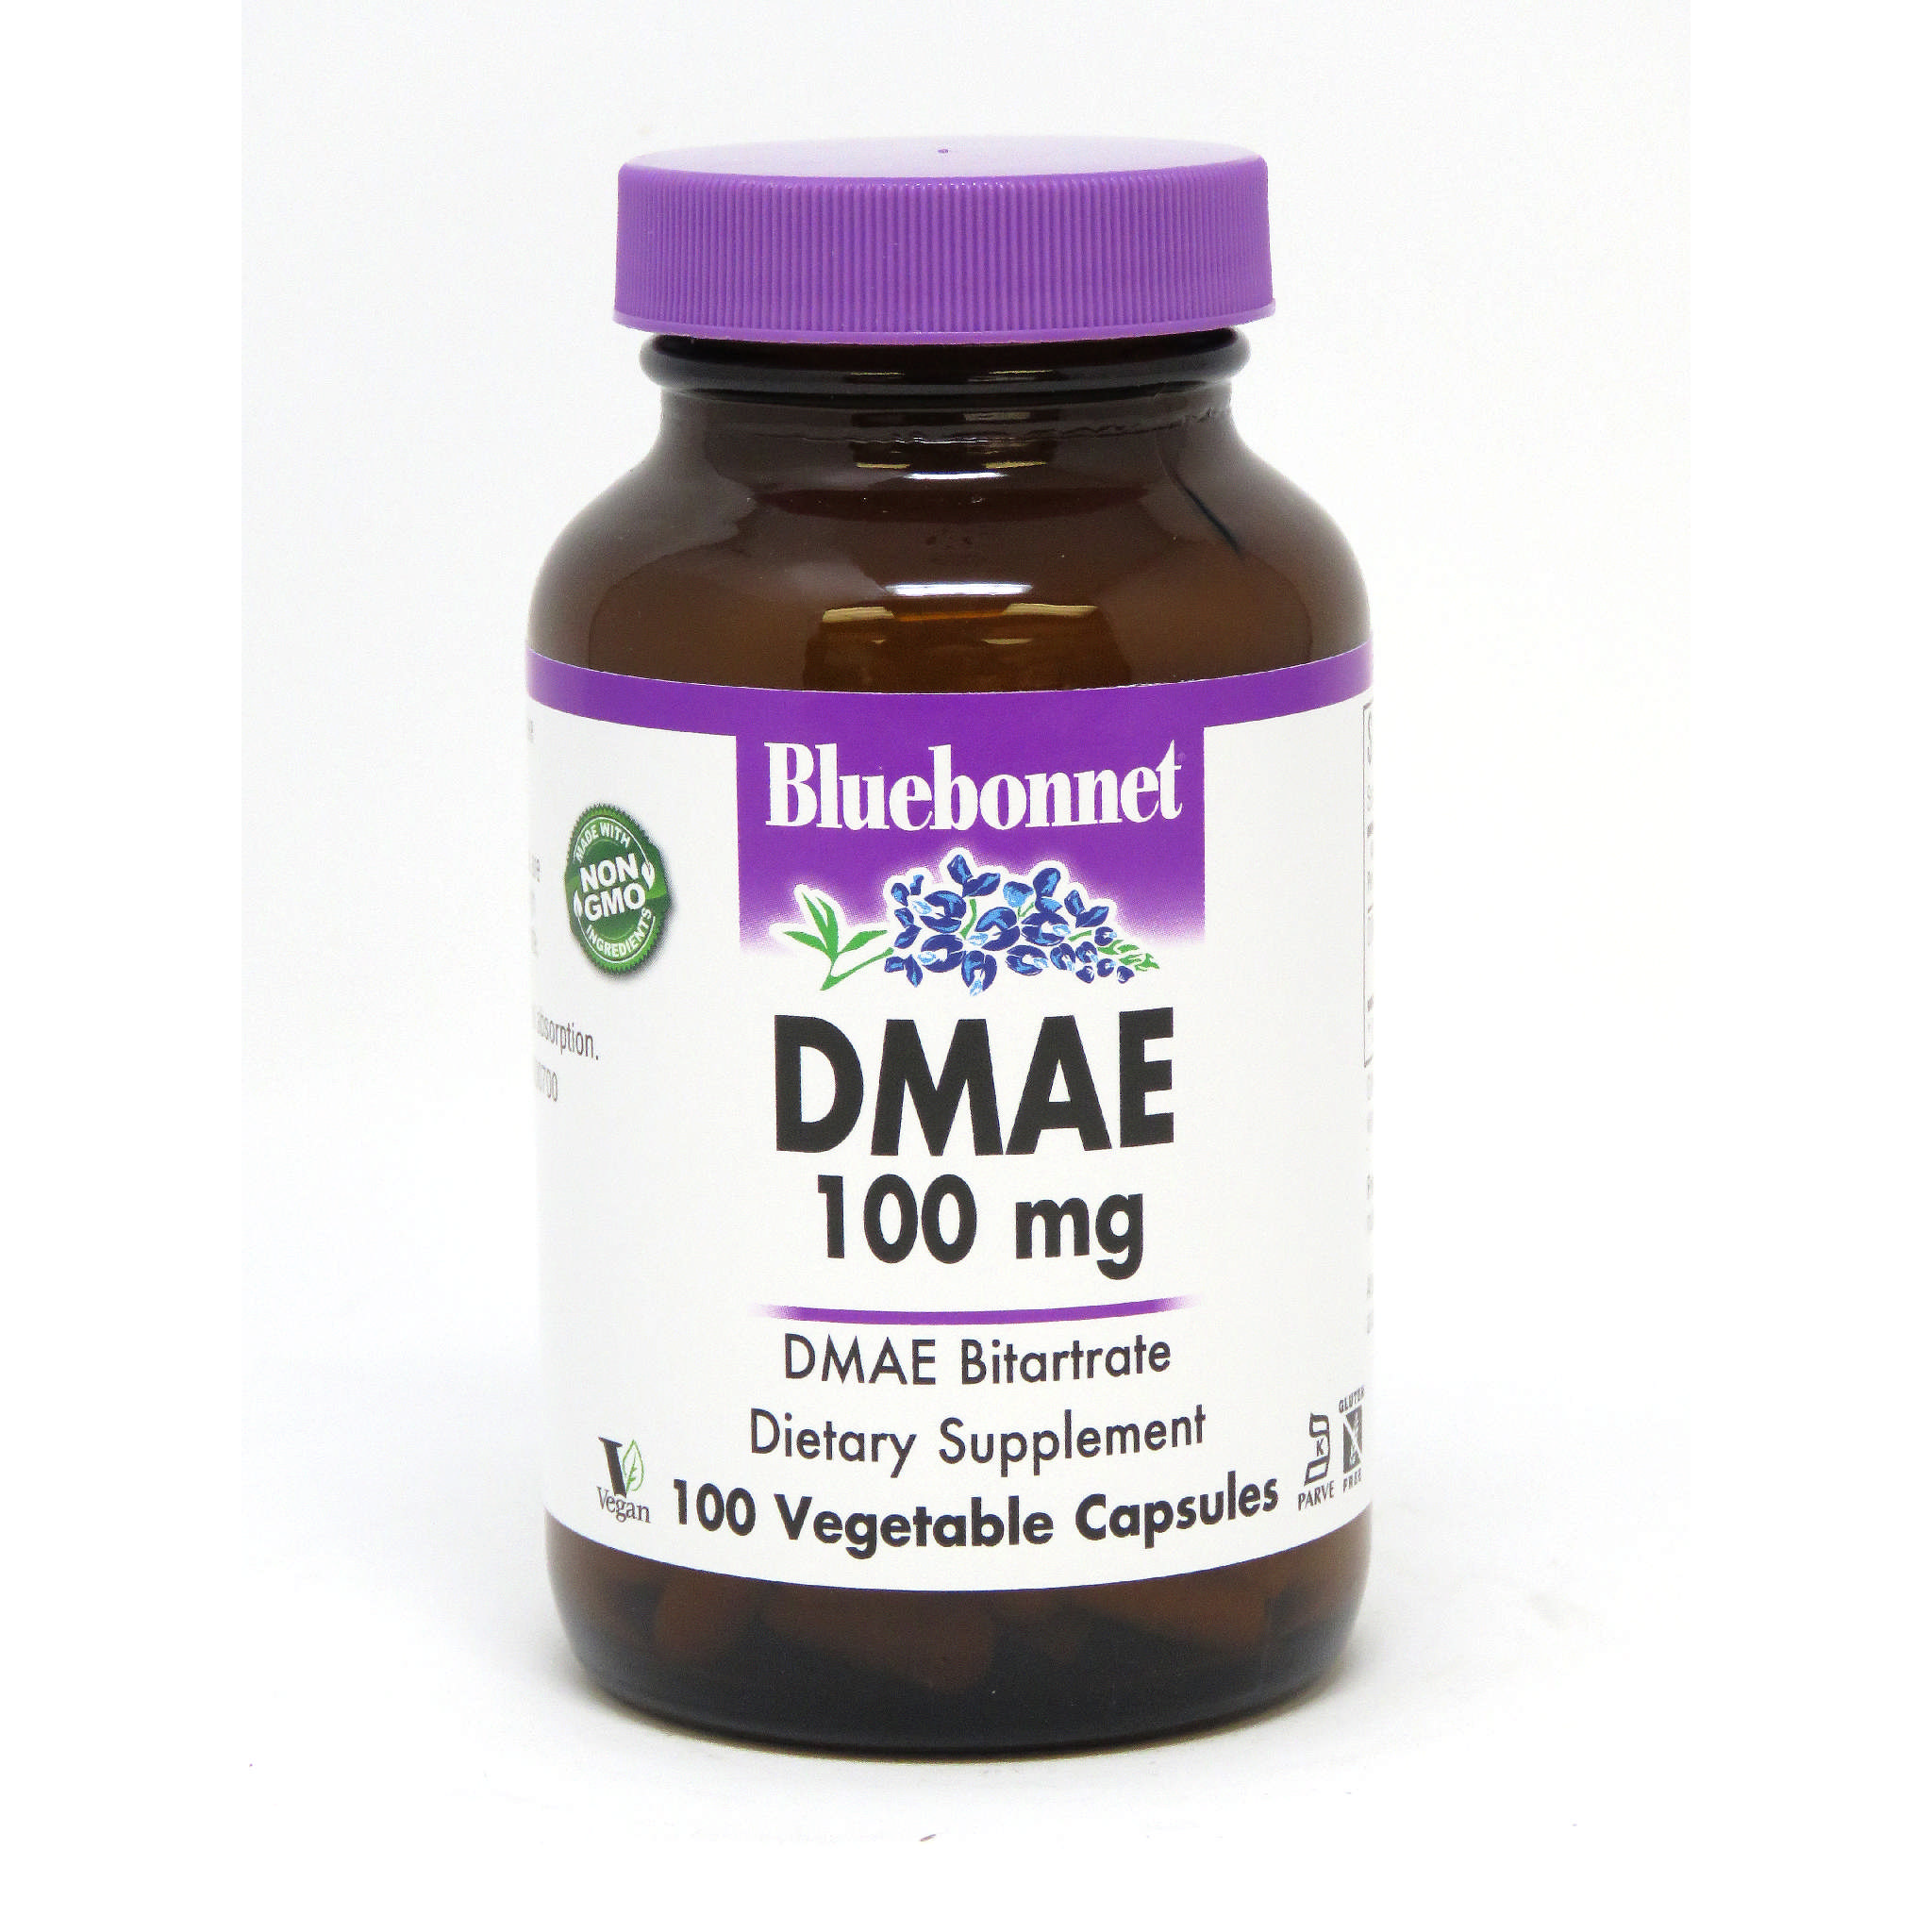 Bluebonnet - Dmae 100 mg Bitartrate